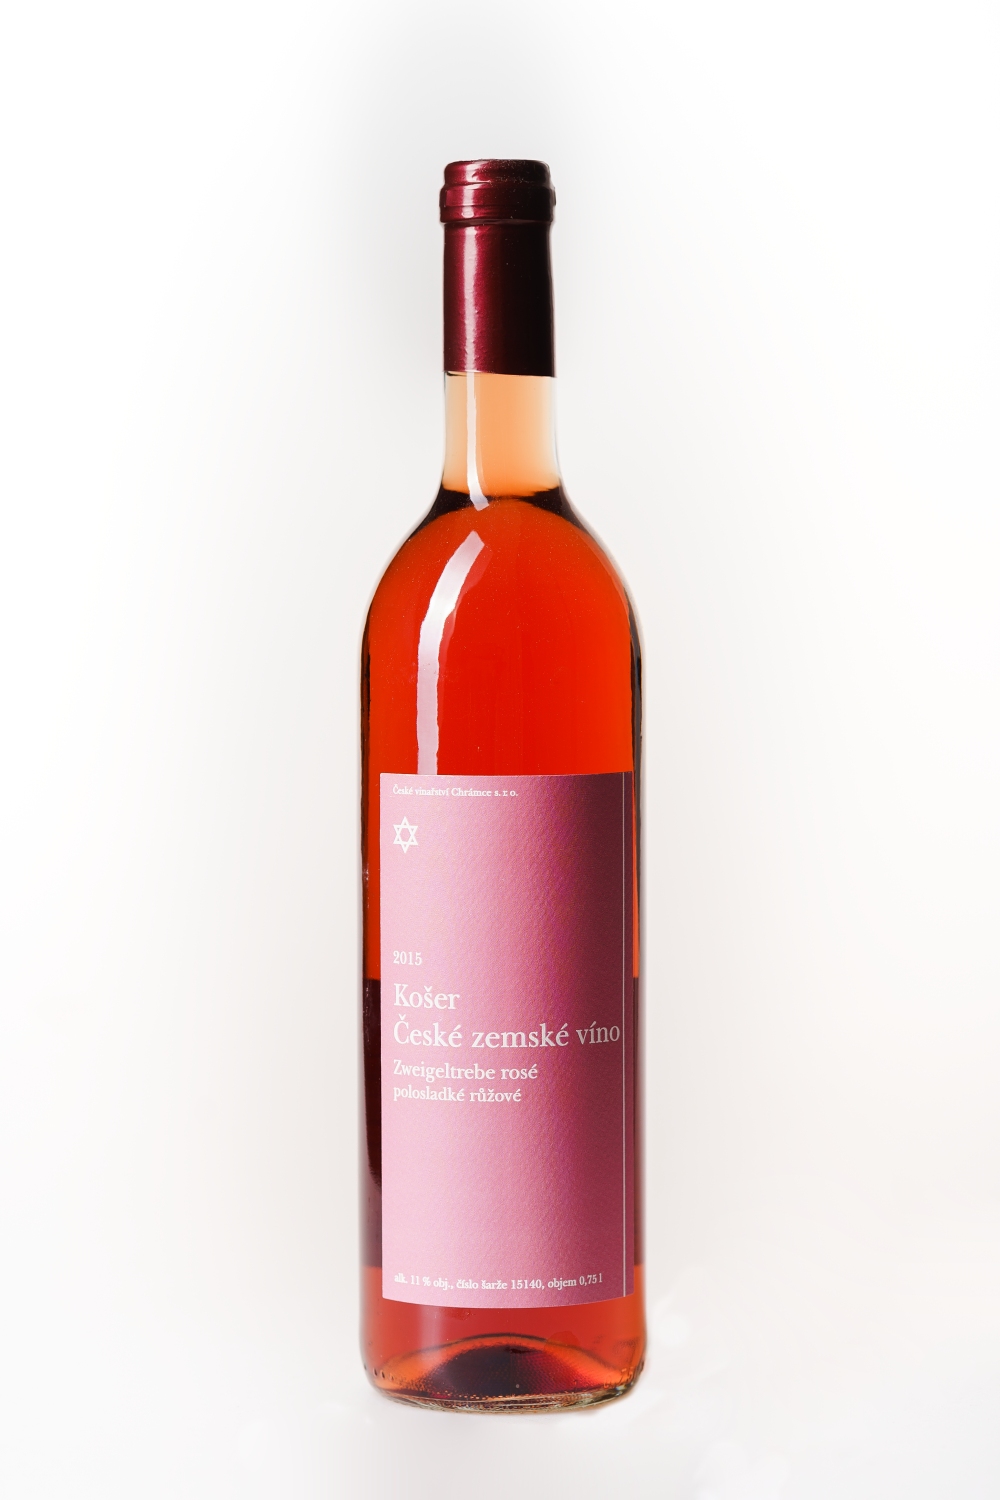 Zweigeltrebe rosé košer 2015 polosladké růžové víno 0,75l